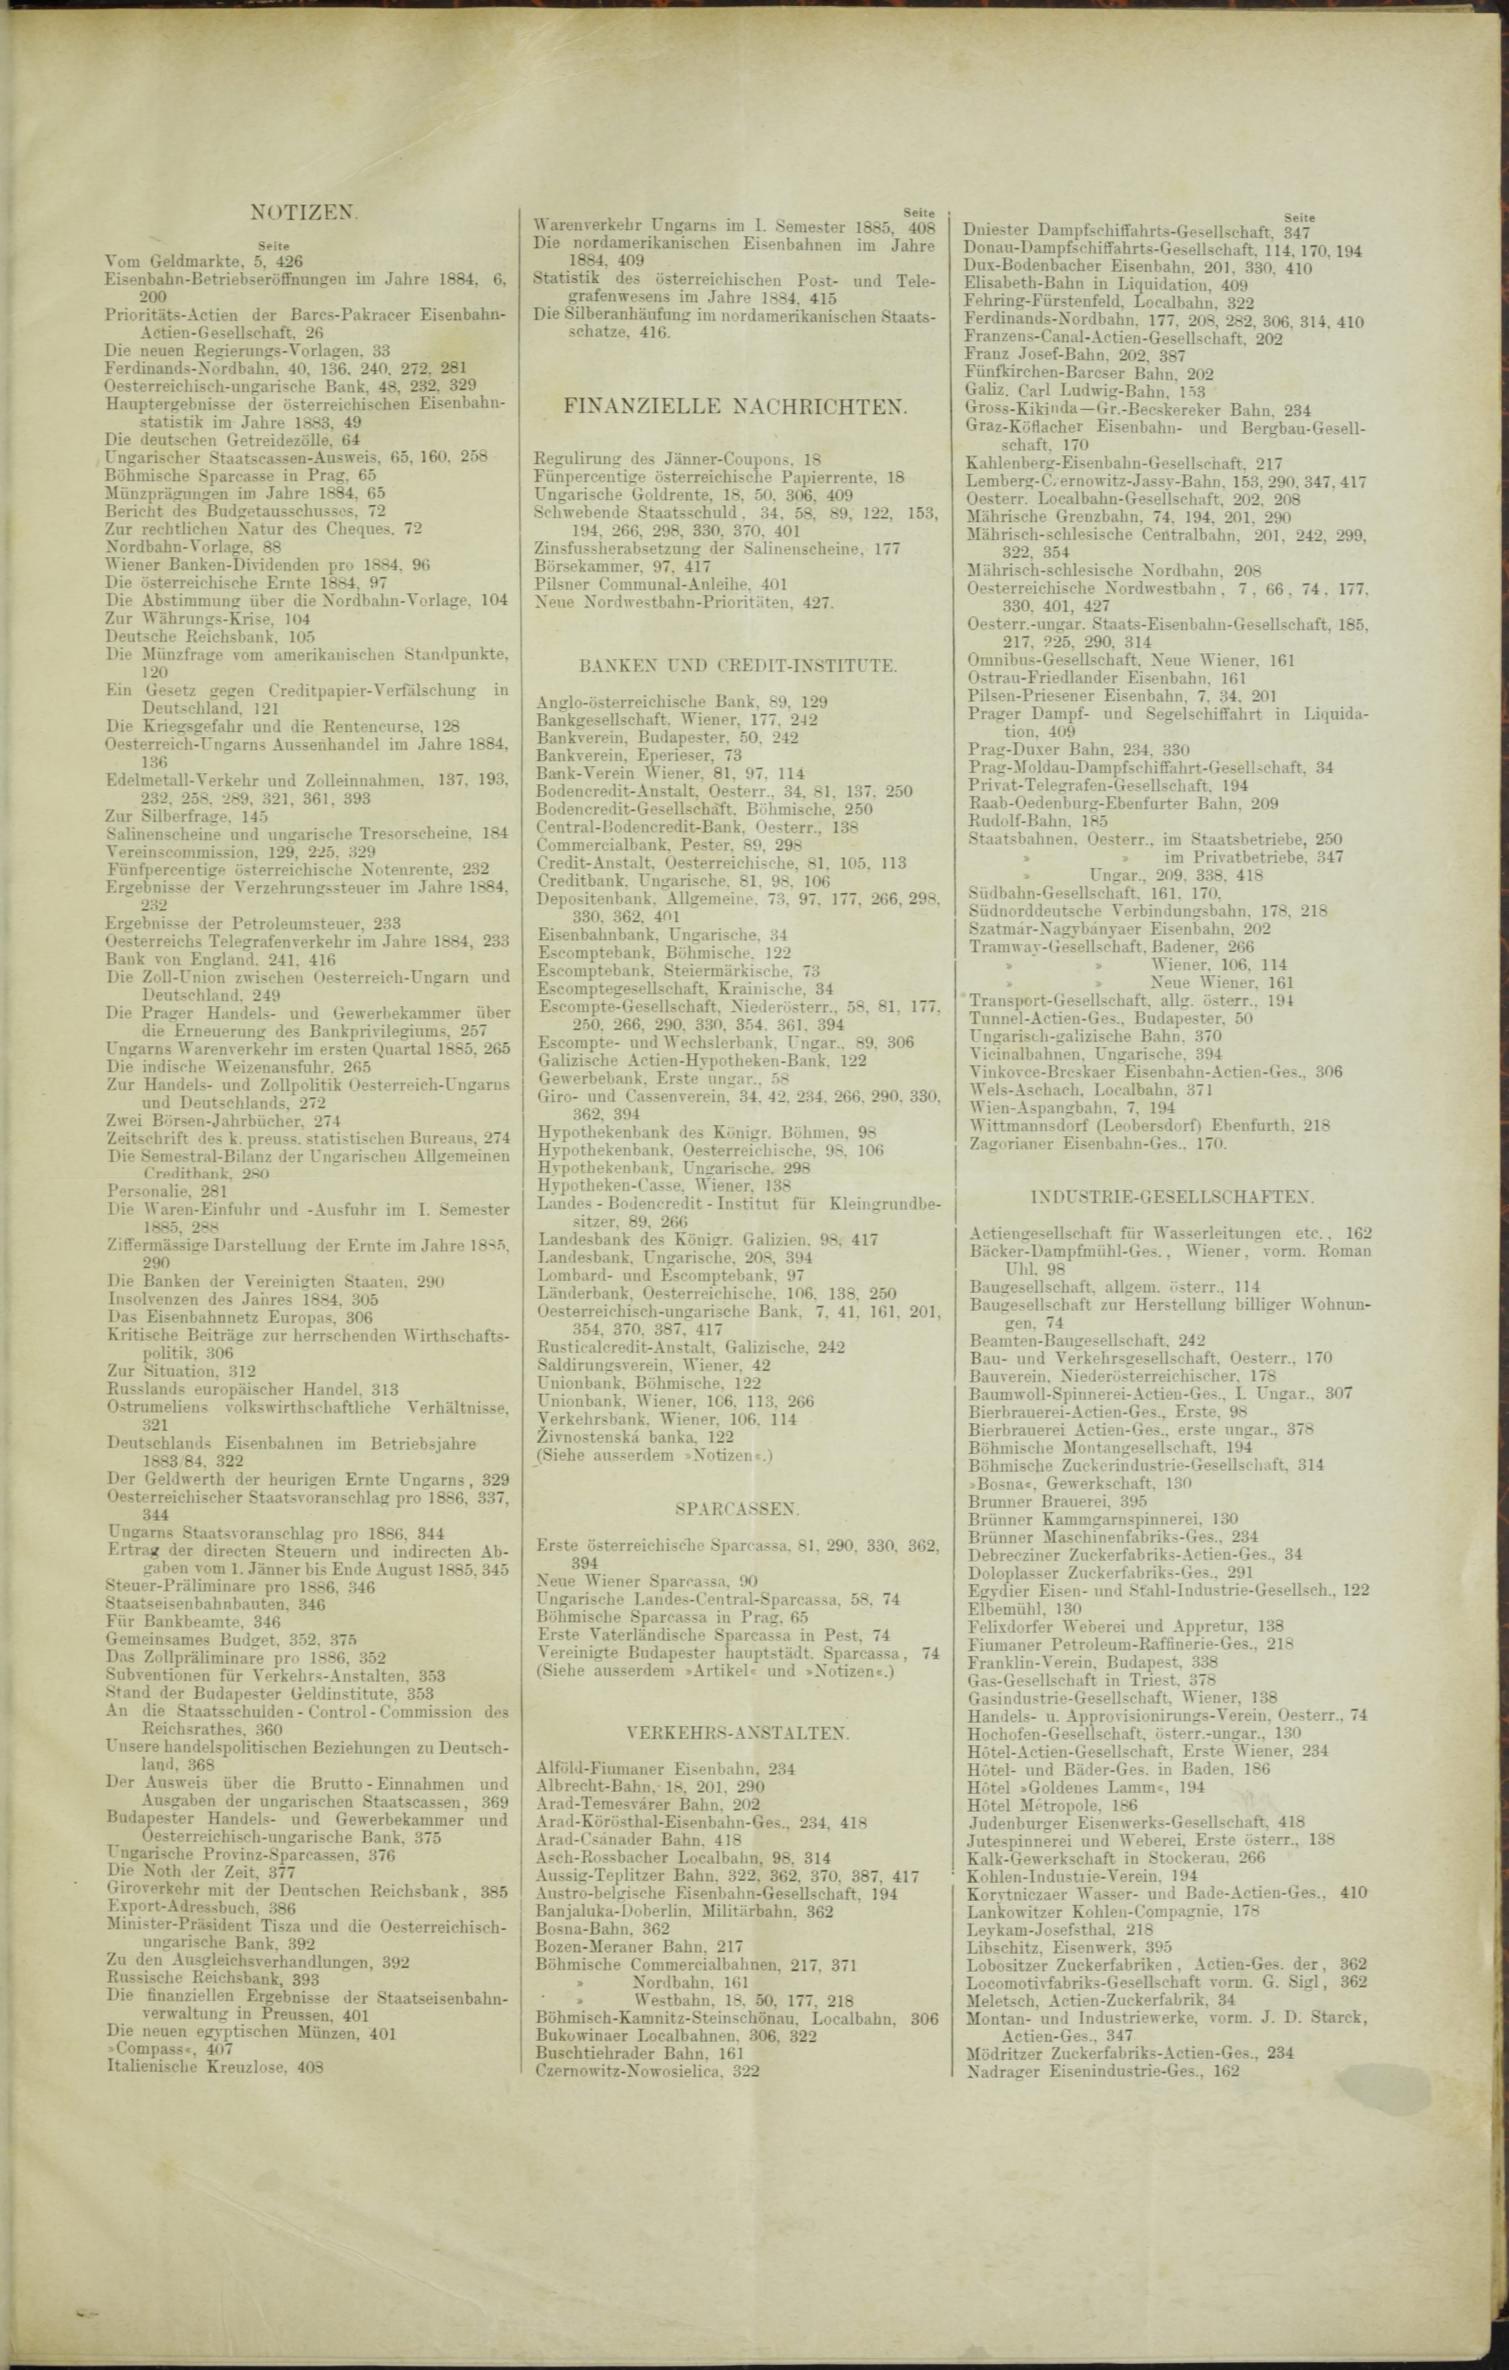 Der Tresor 09.07.1885 - Seite 9